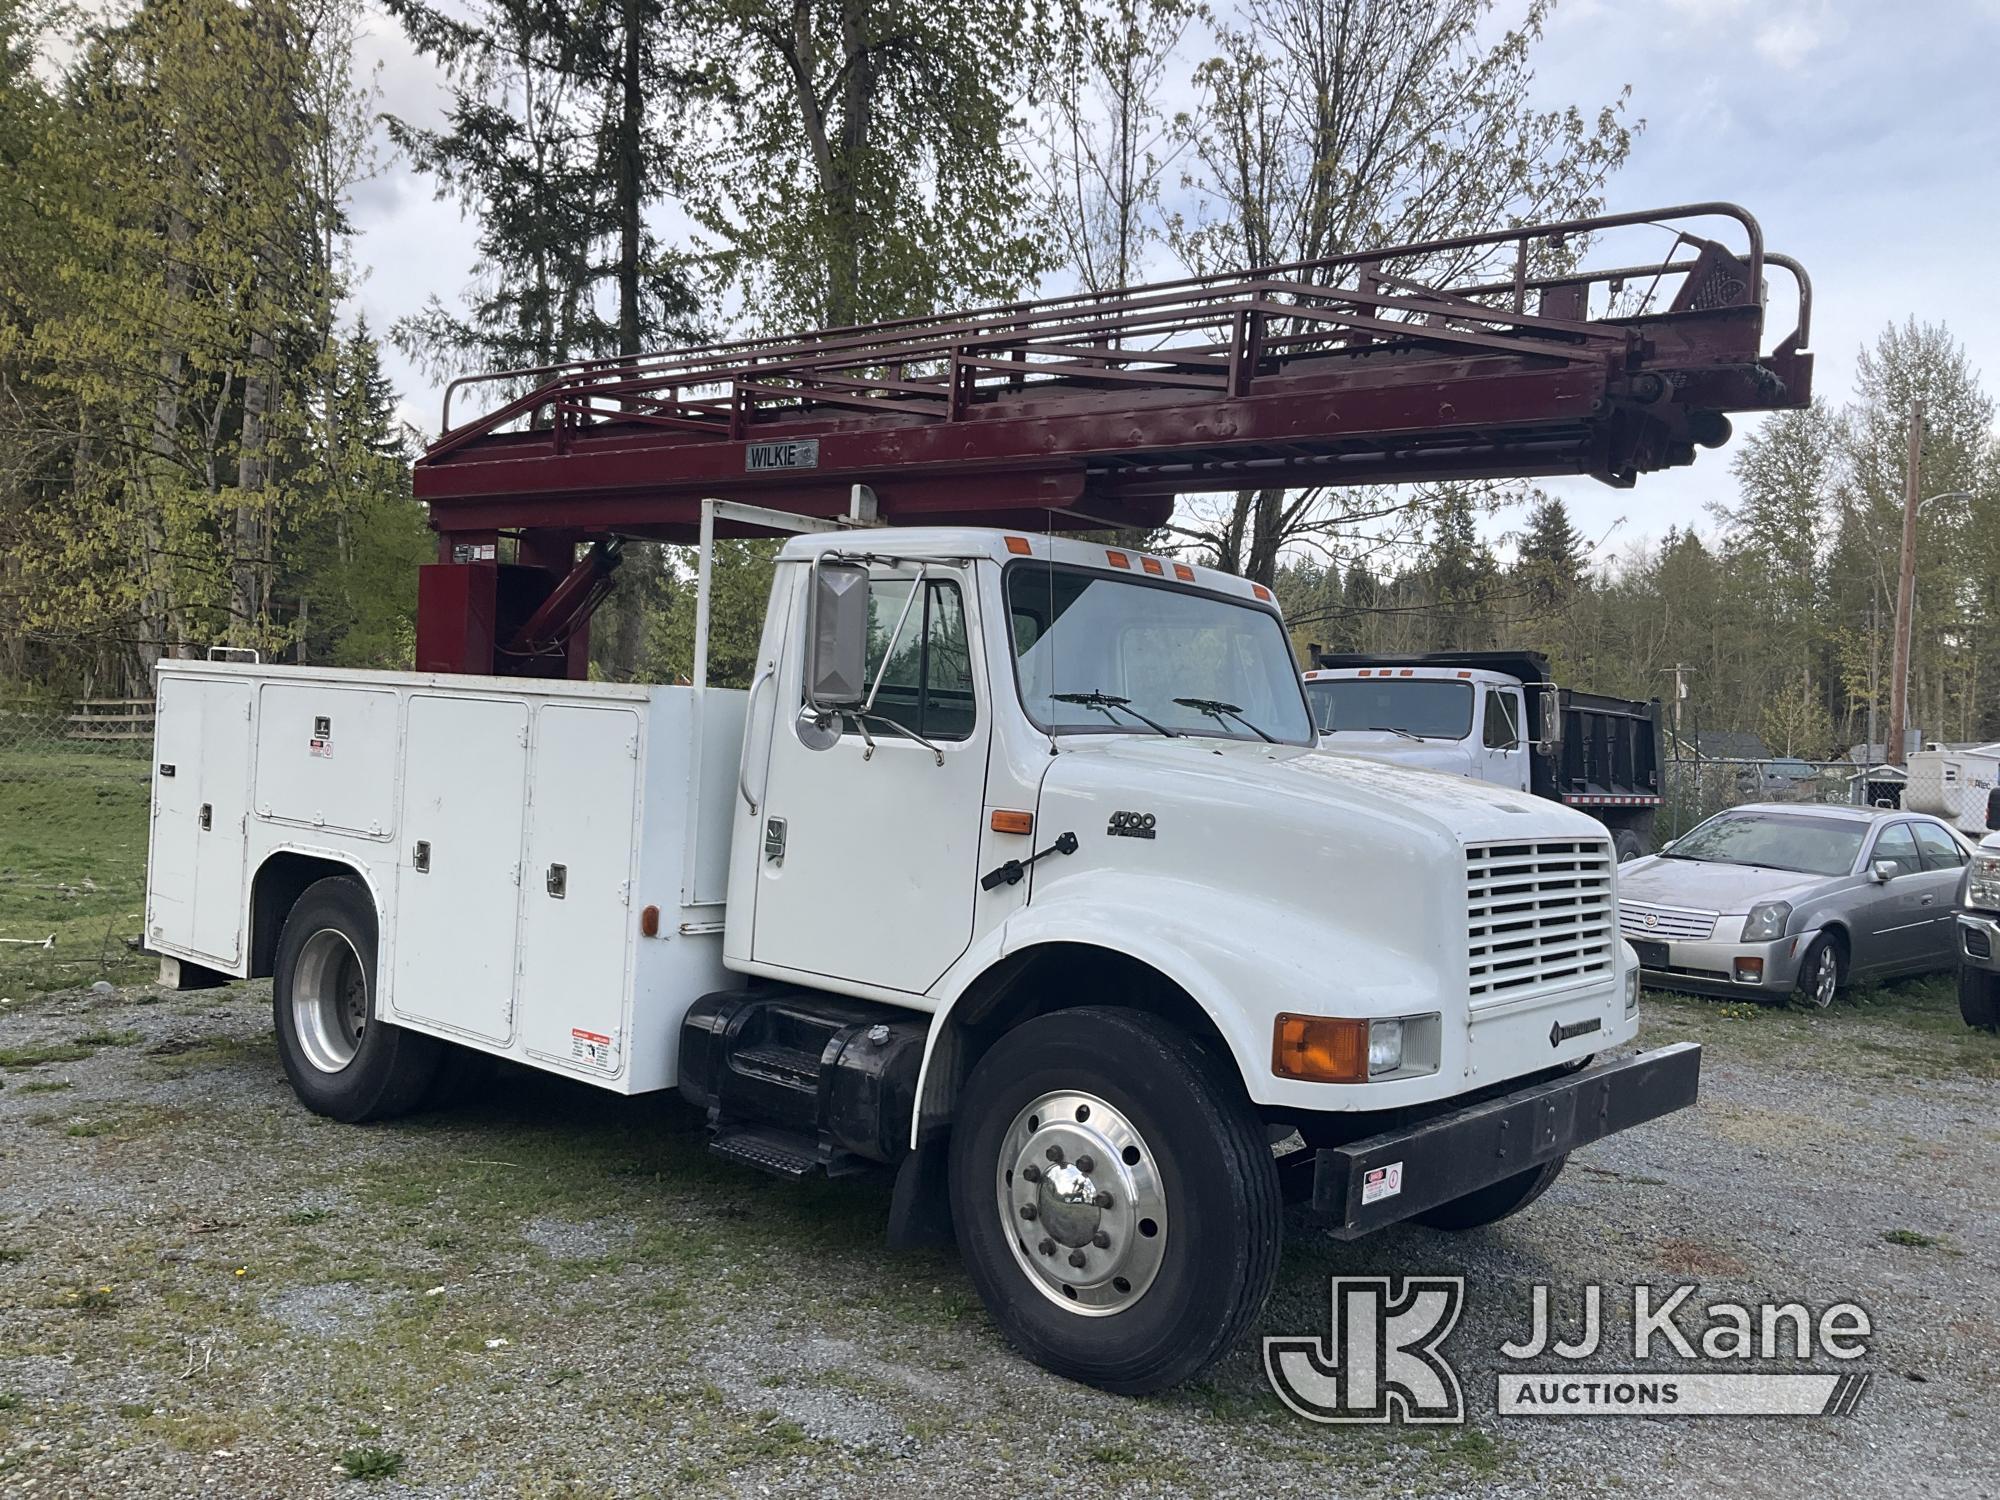 (Eatonville, WA) Wilkie 60, Ladder Truck rear mounted on 2001 International 4700 Utility Truck Not R